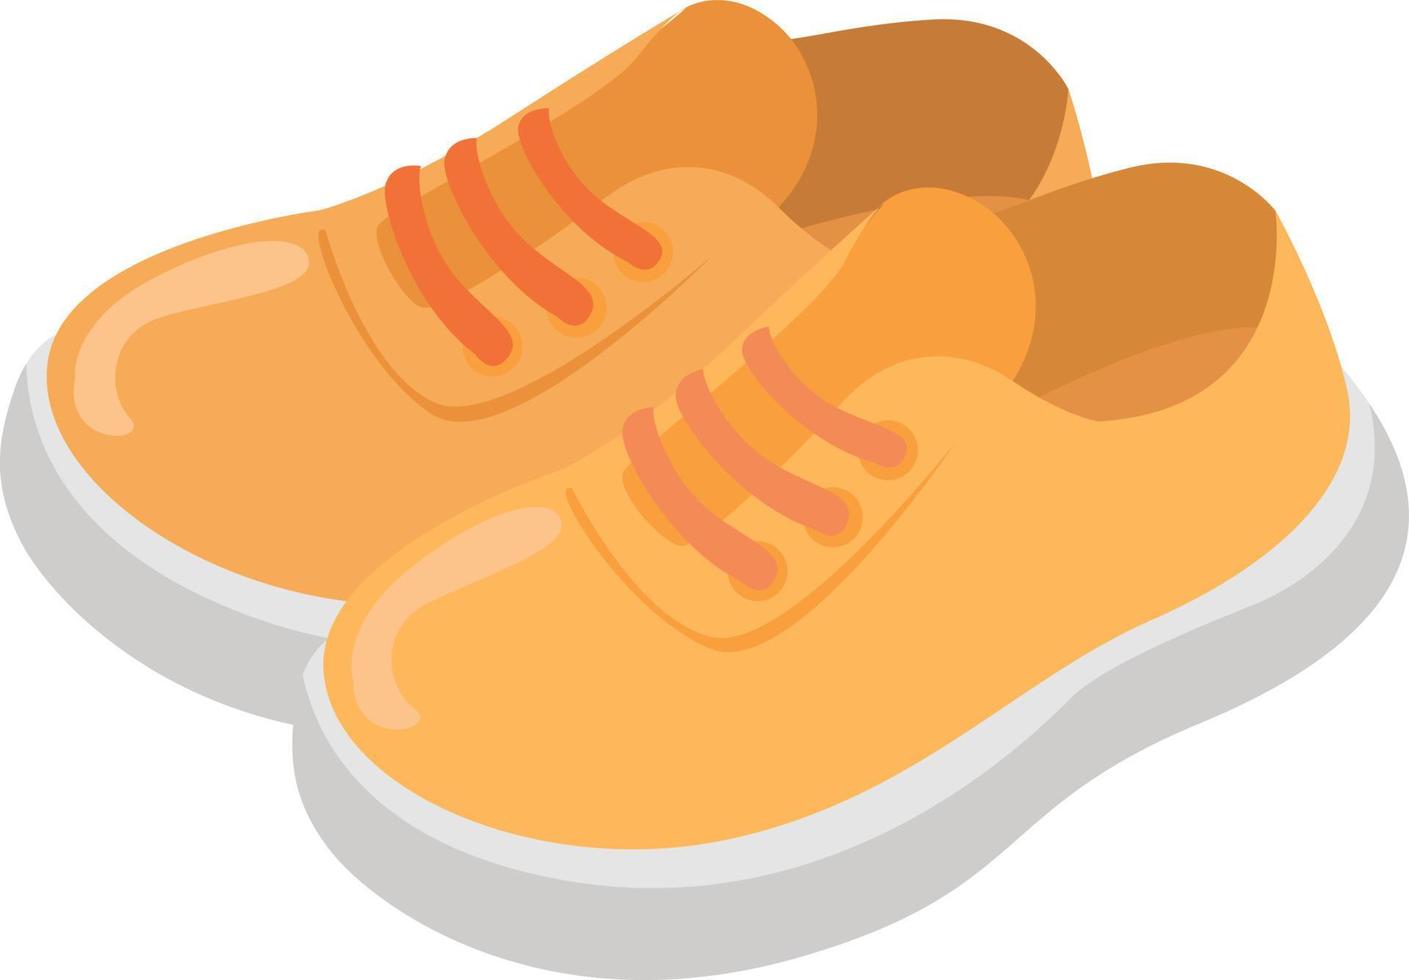 chaussures jaunes, illustration, vecteur sur fond blanc.